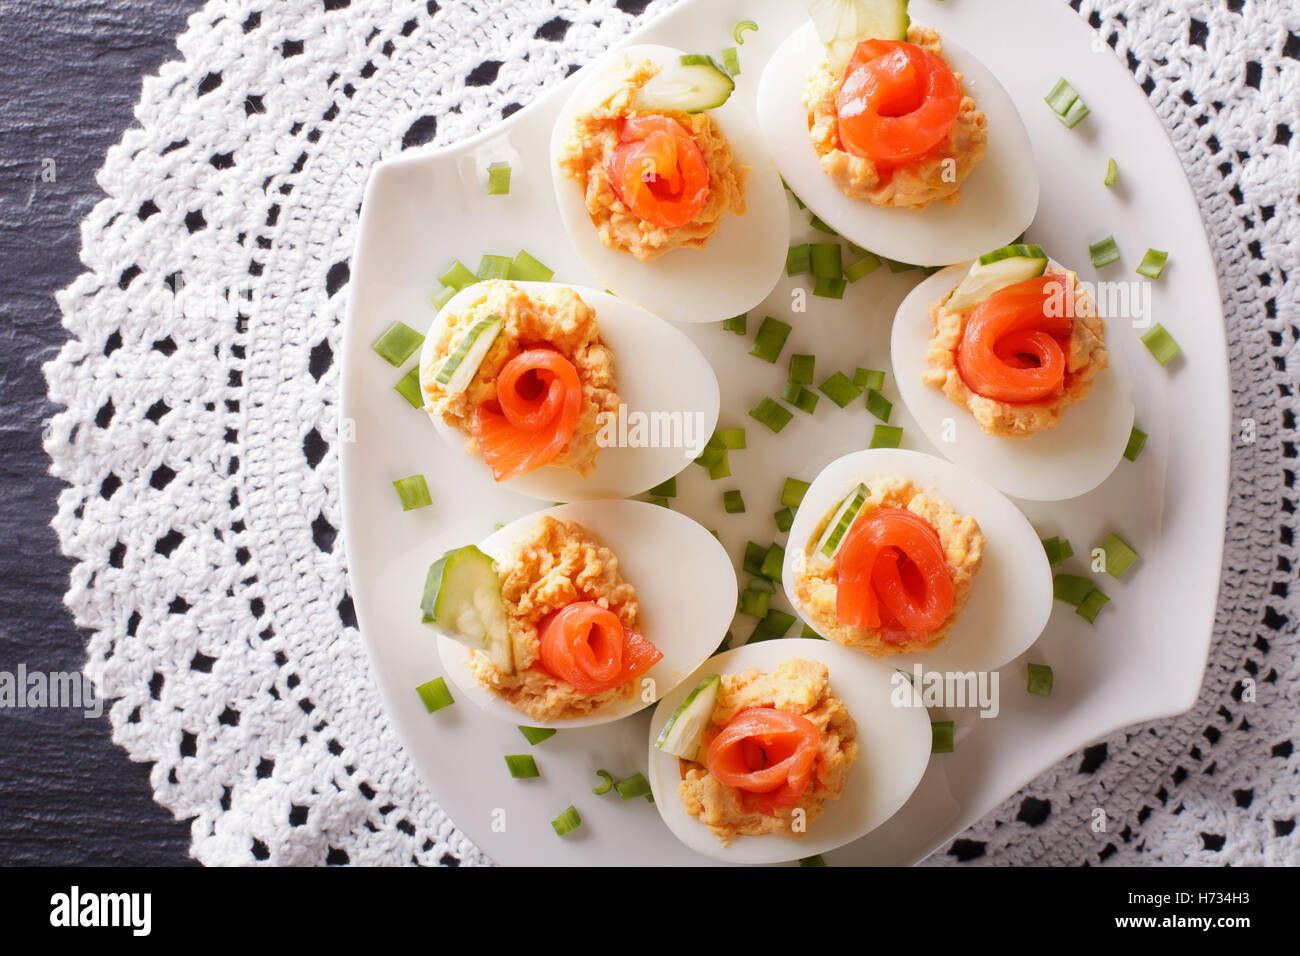 Huevos rellenos de crema de salmón ahumado